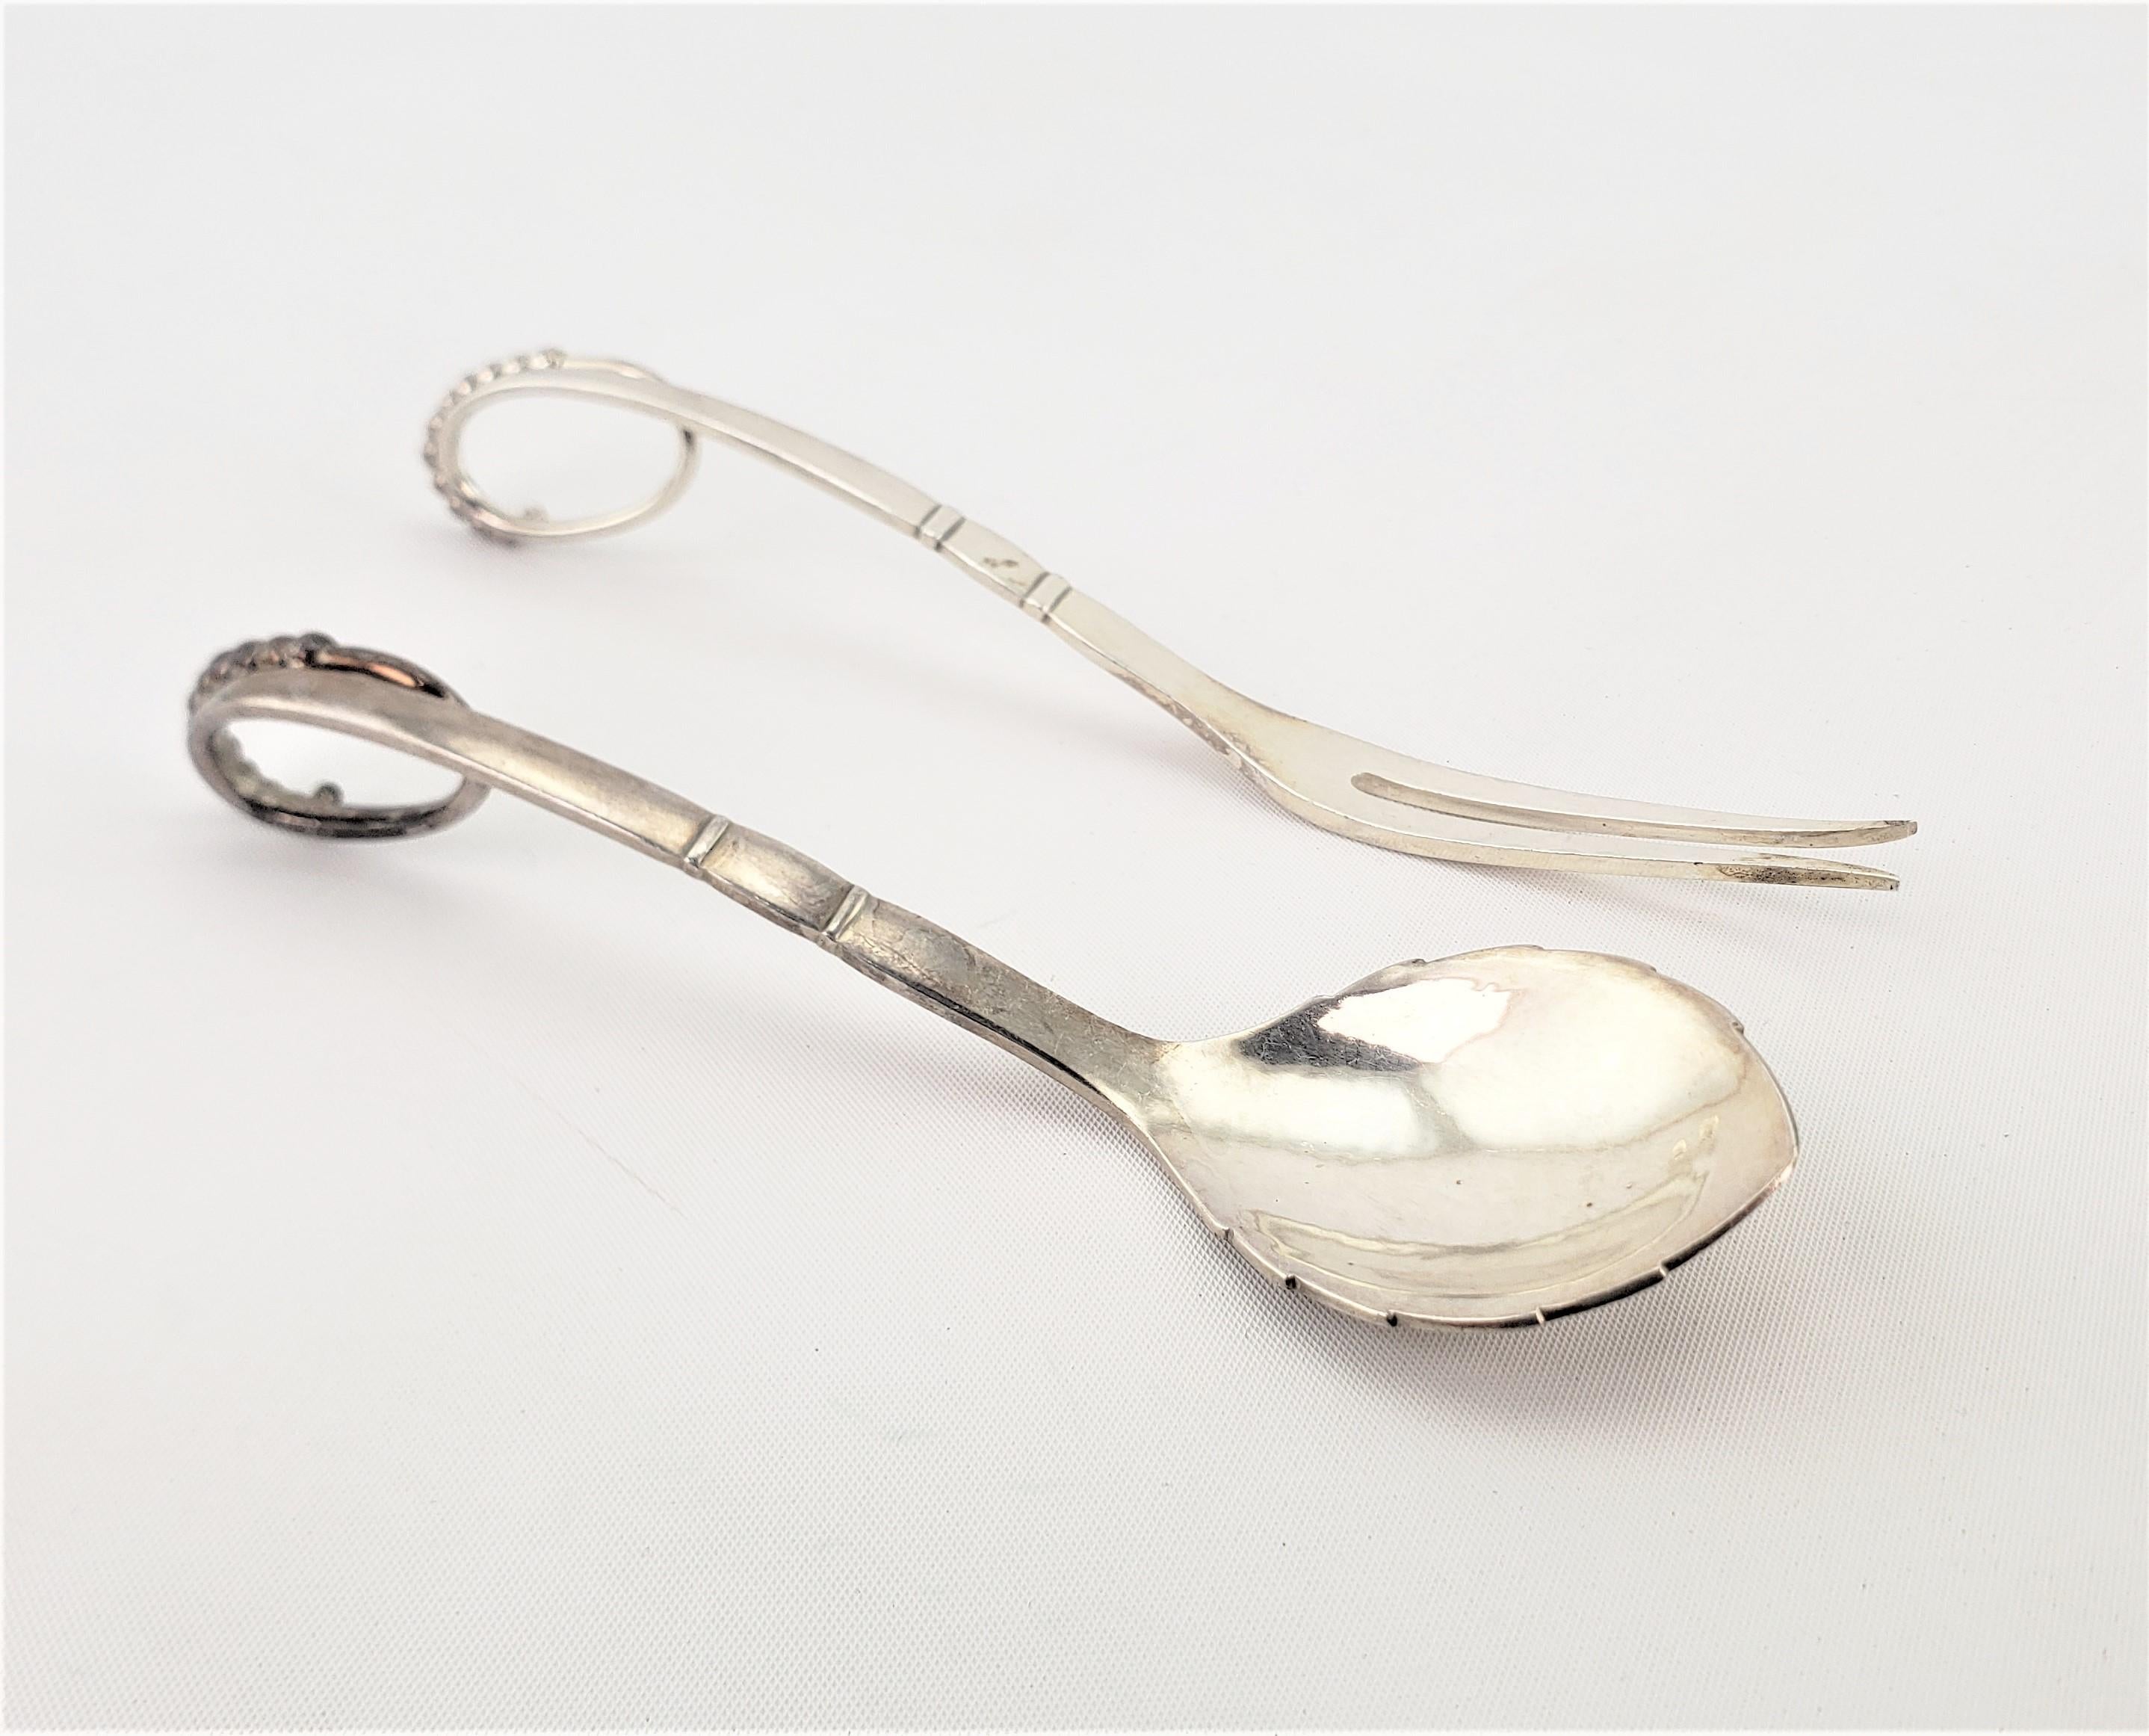 Ce set de fourchettes et de couteaux en argent sterling a été réalisé par le célèbre danois Georg Jensen dans son motif Blossom, dans un style naturaliste ou organique. Les deux pièces sont clairement poinçonnées et portent la marque du fabricant